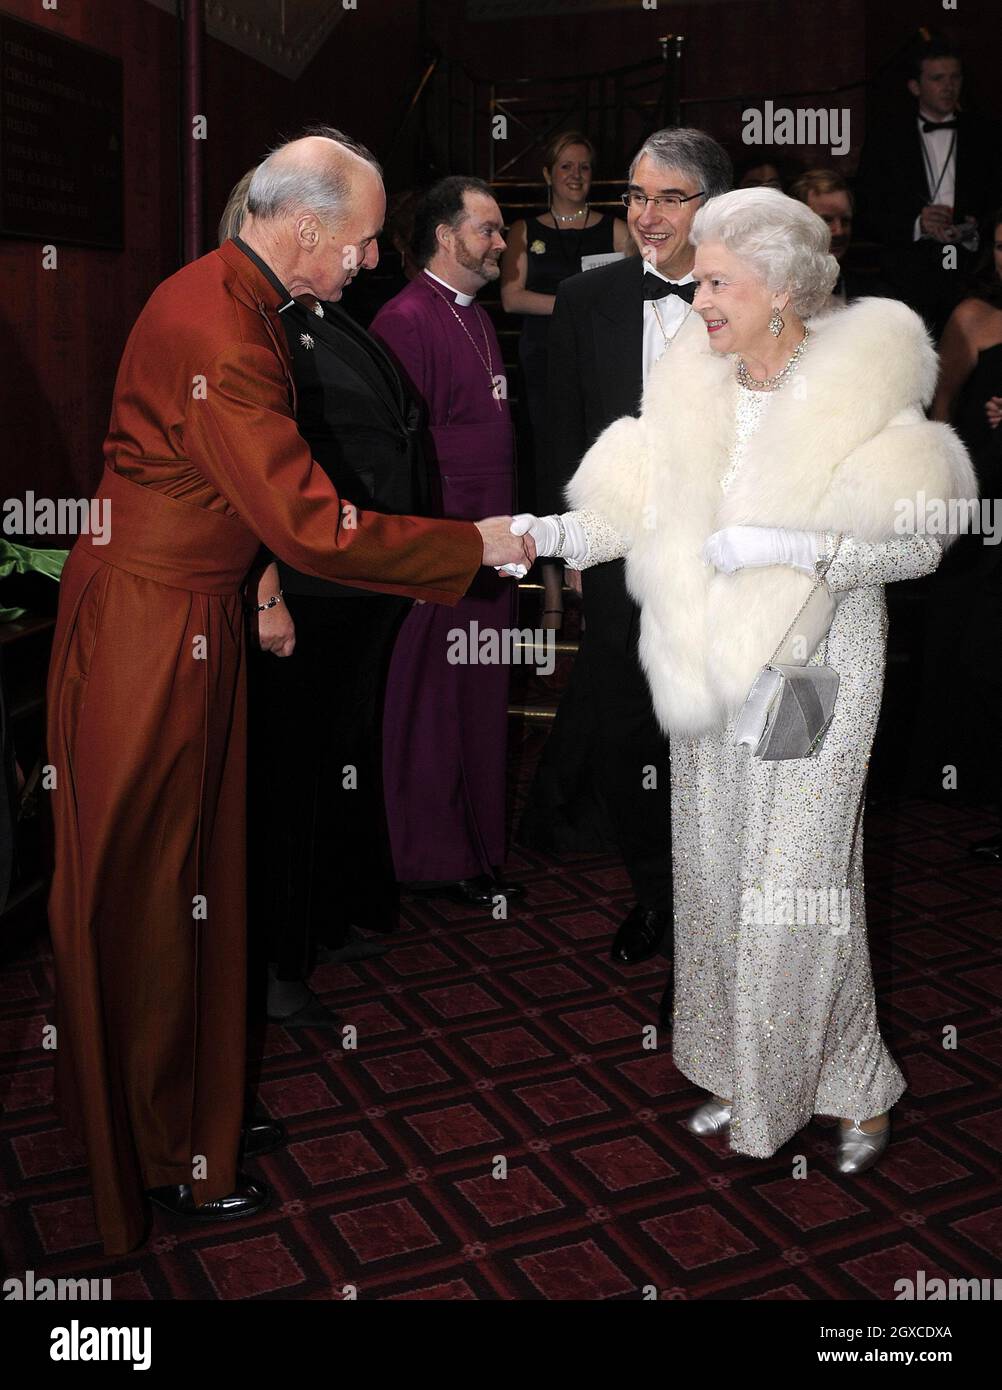 La reine Elizabeth ll rencontre des dignitaires locaux au Royal Variety Performance au Empire Theatre de Liverpool le 3 décembre 2007. Banque D'Images